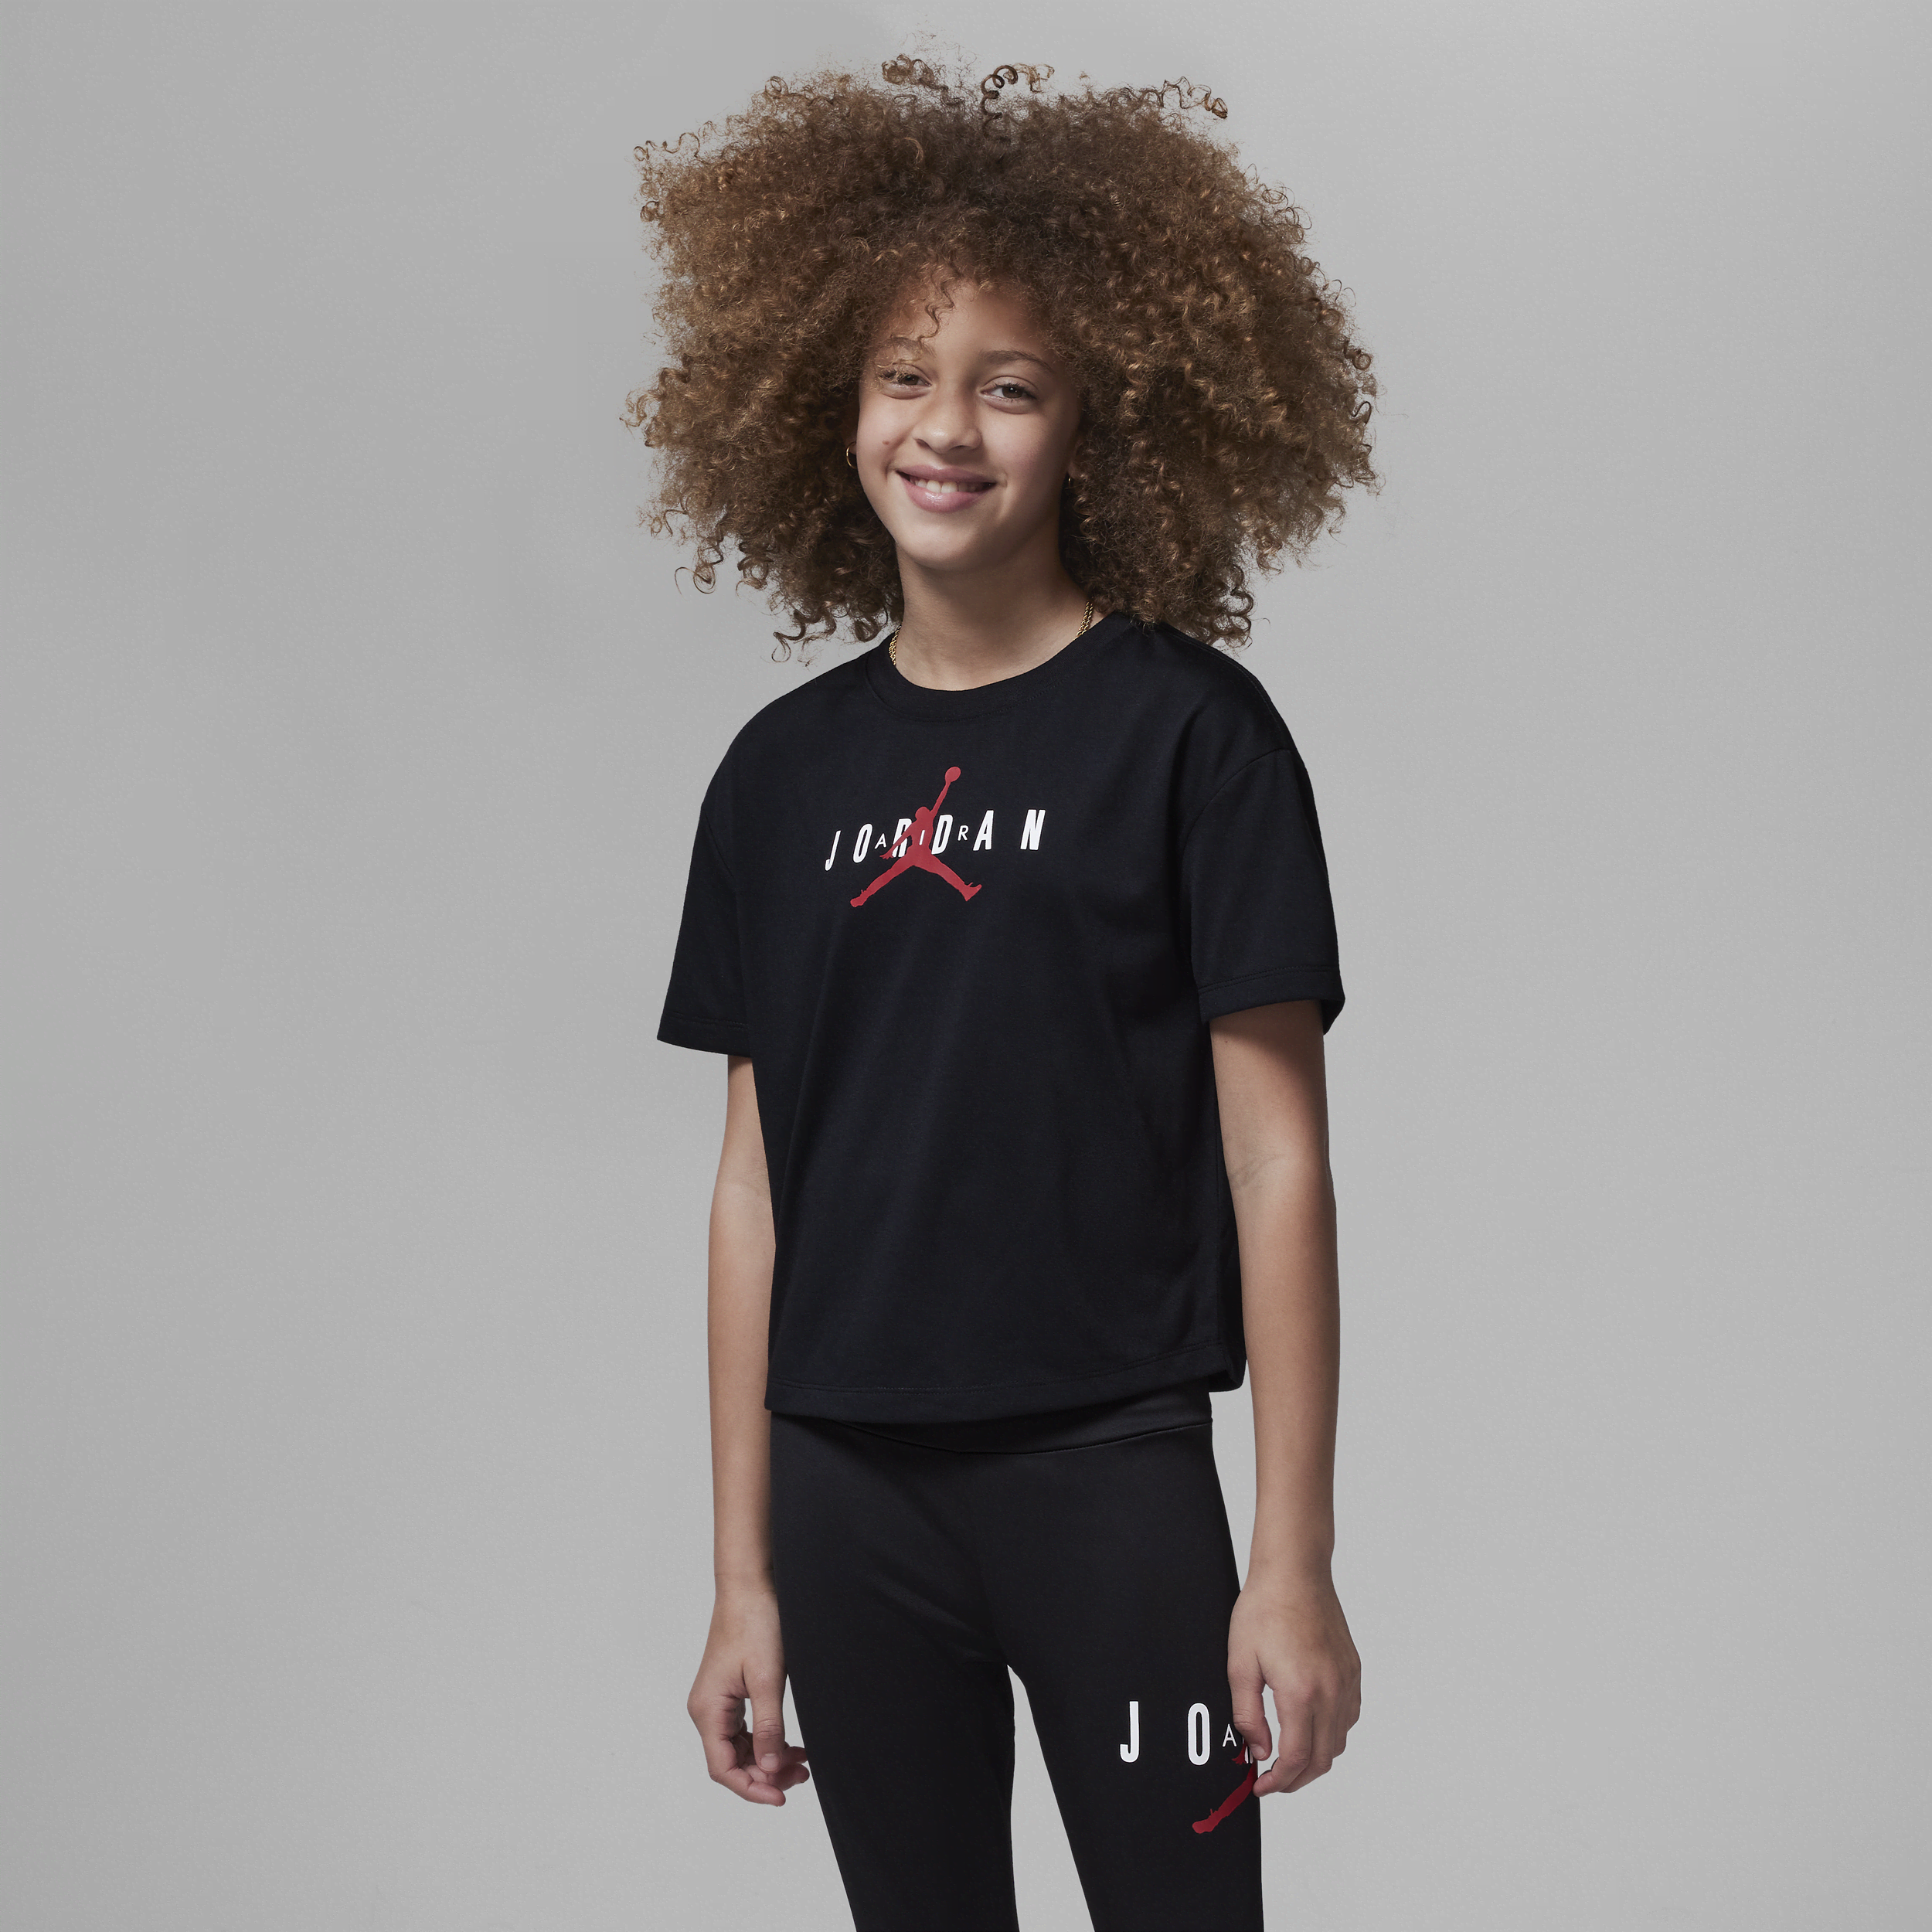 Jordan-T-shirt til større børn - sort